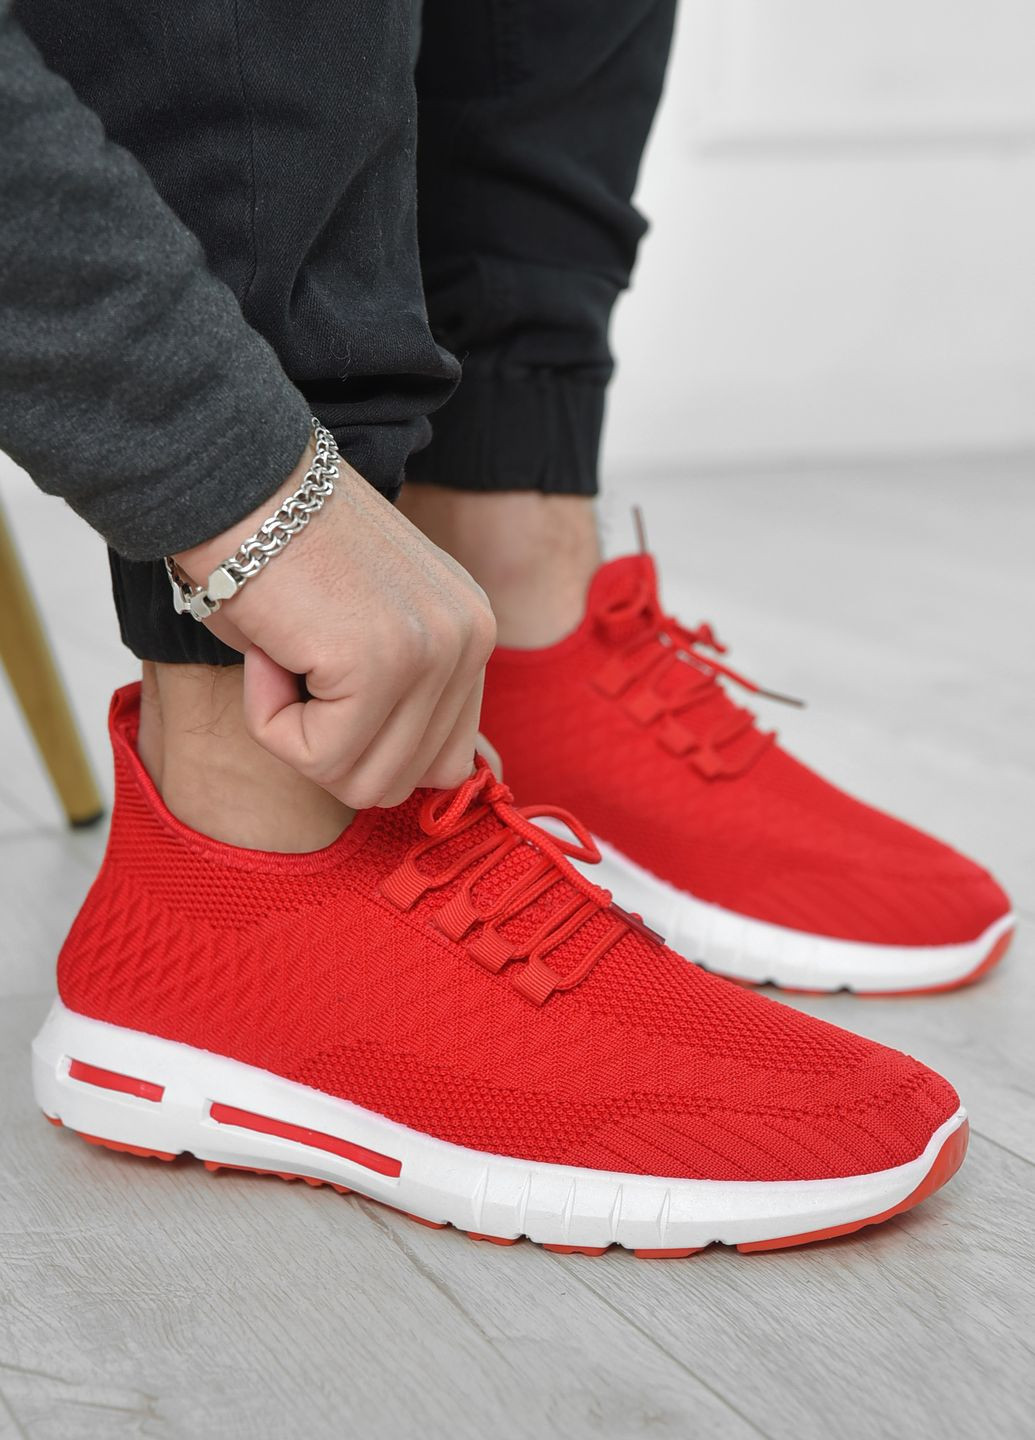 Червоні Осінні кросівки чоловічі червоного кольору текстиль Let's Shop